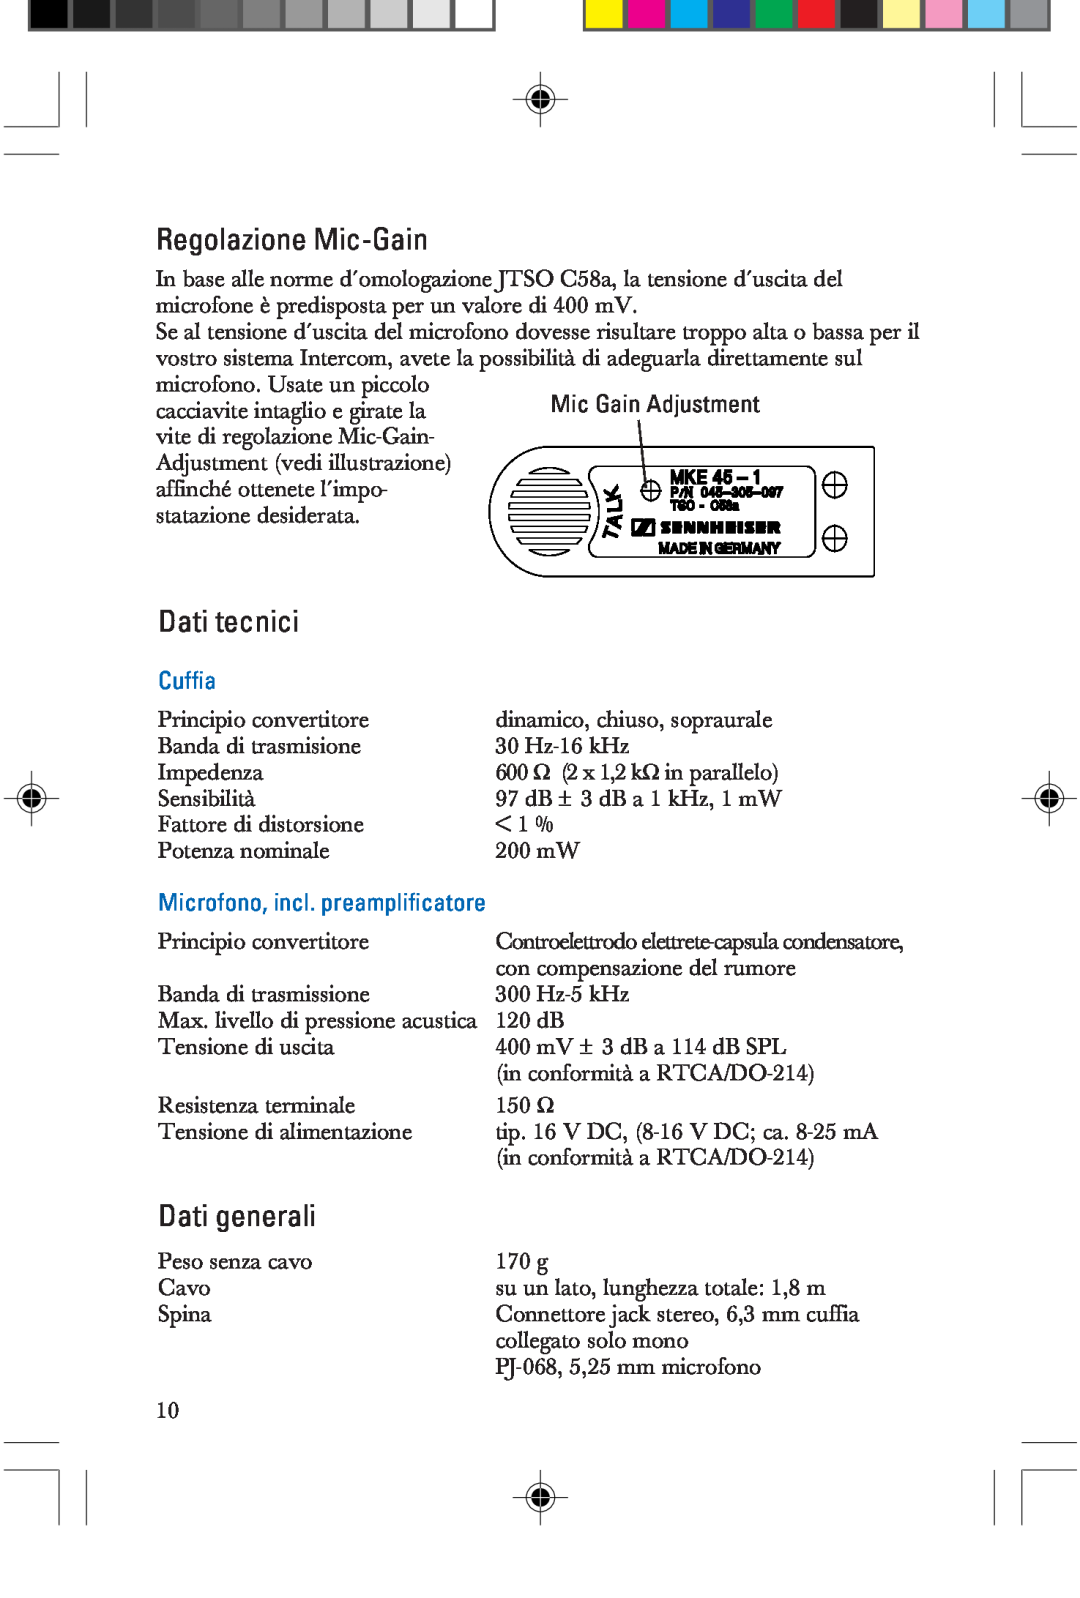 Sennheiser HME 25-KA-2 manual Regolazione Mic-Gain, Dati tecnici, Dati generali, Cuffia, Microfono, incl. preamplificatore 